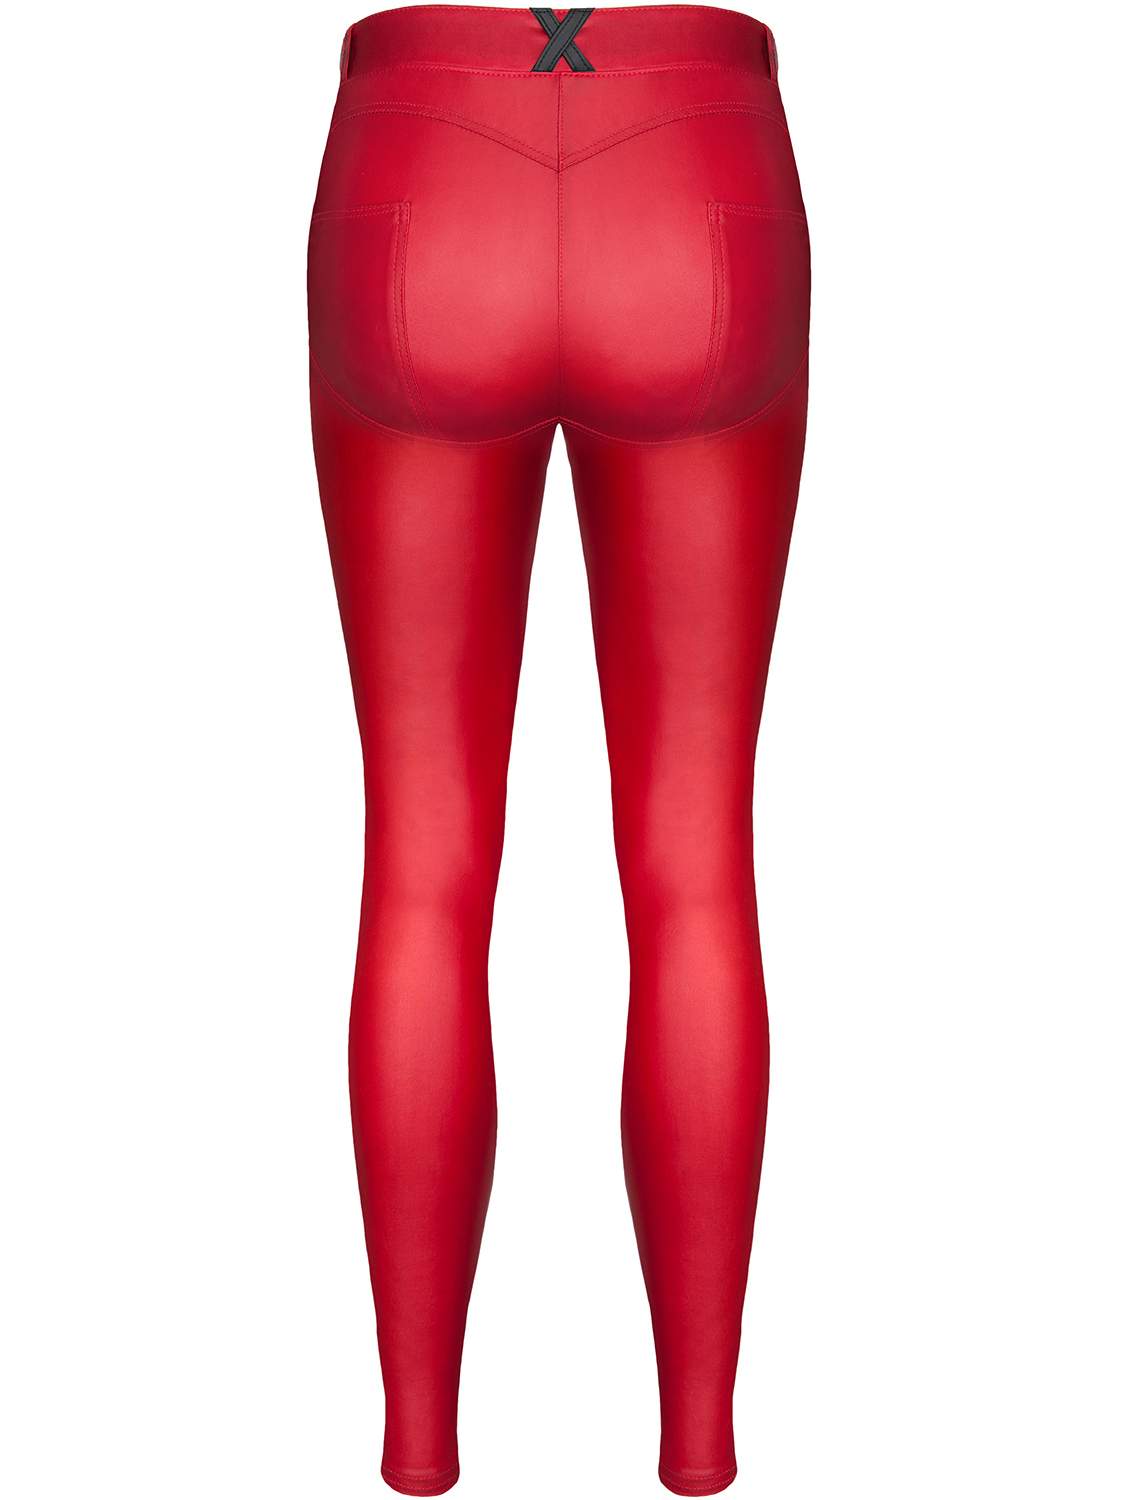 Czerwone, elastyczne legginsy z czarnym znaczkiem "X" z tyłu – Demoniq Lidia